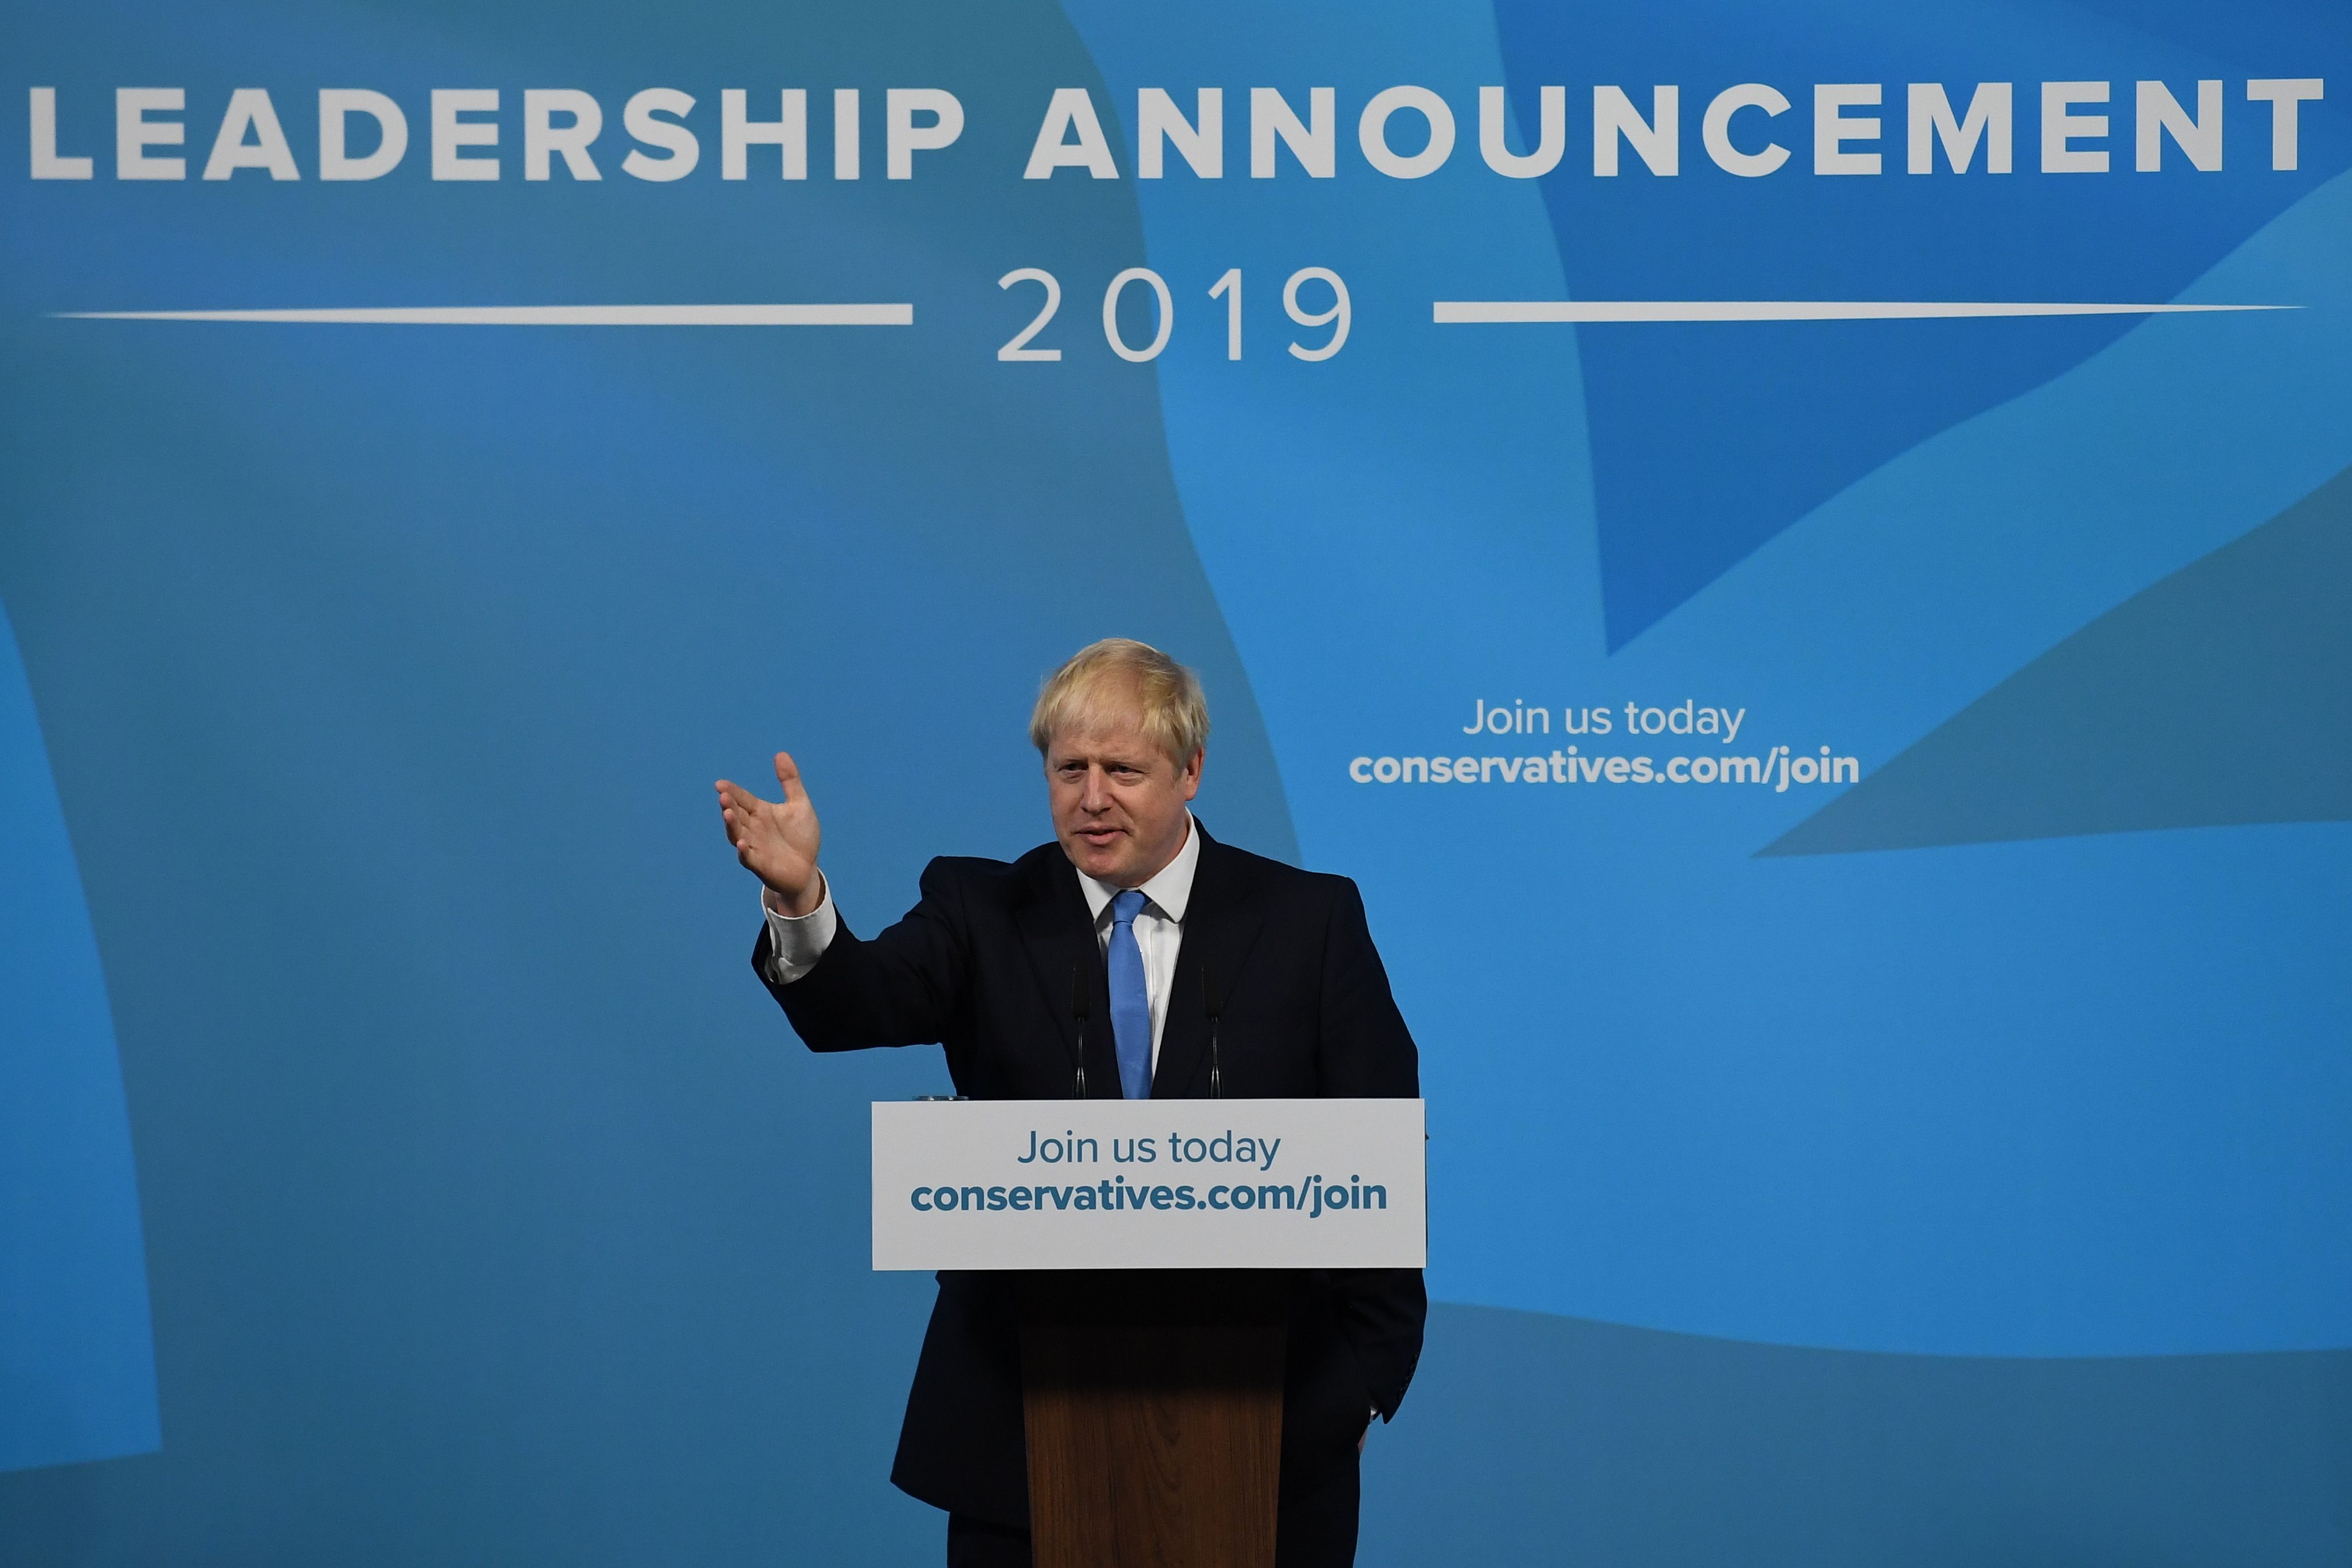 El político Boris Johnson prometió la salida de la UE aunque no exista acuerdo. (Foto Prensa Libre: AFP)